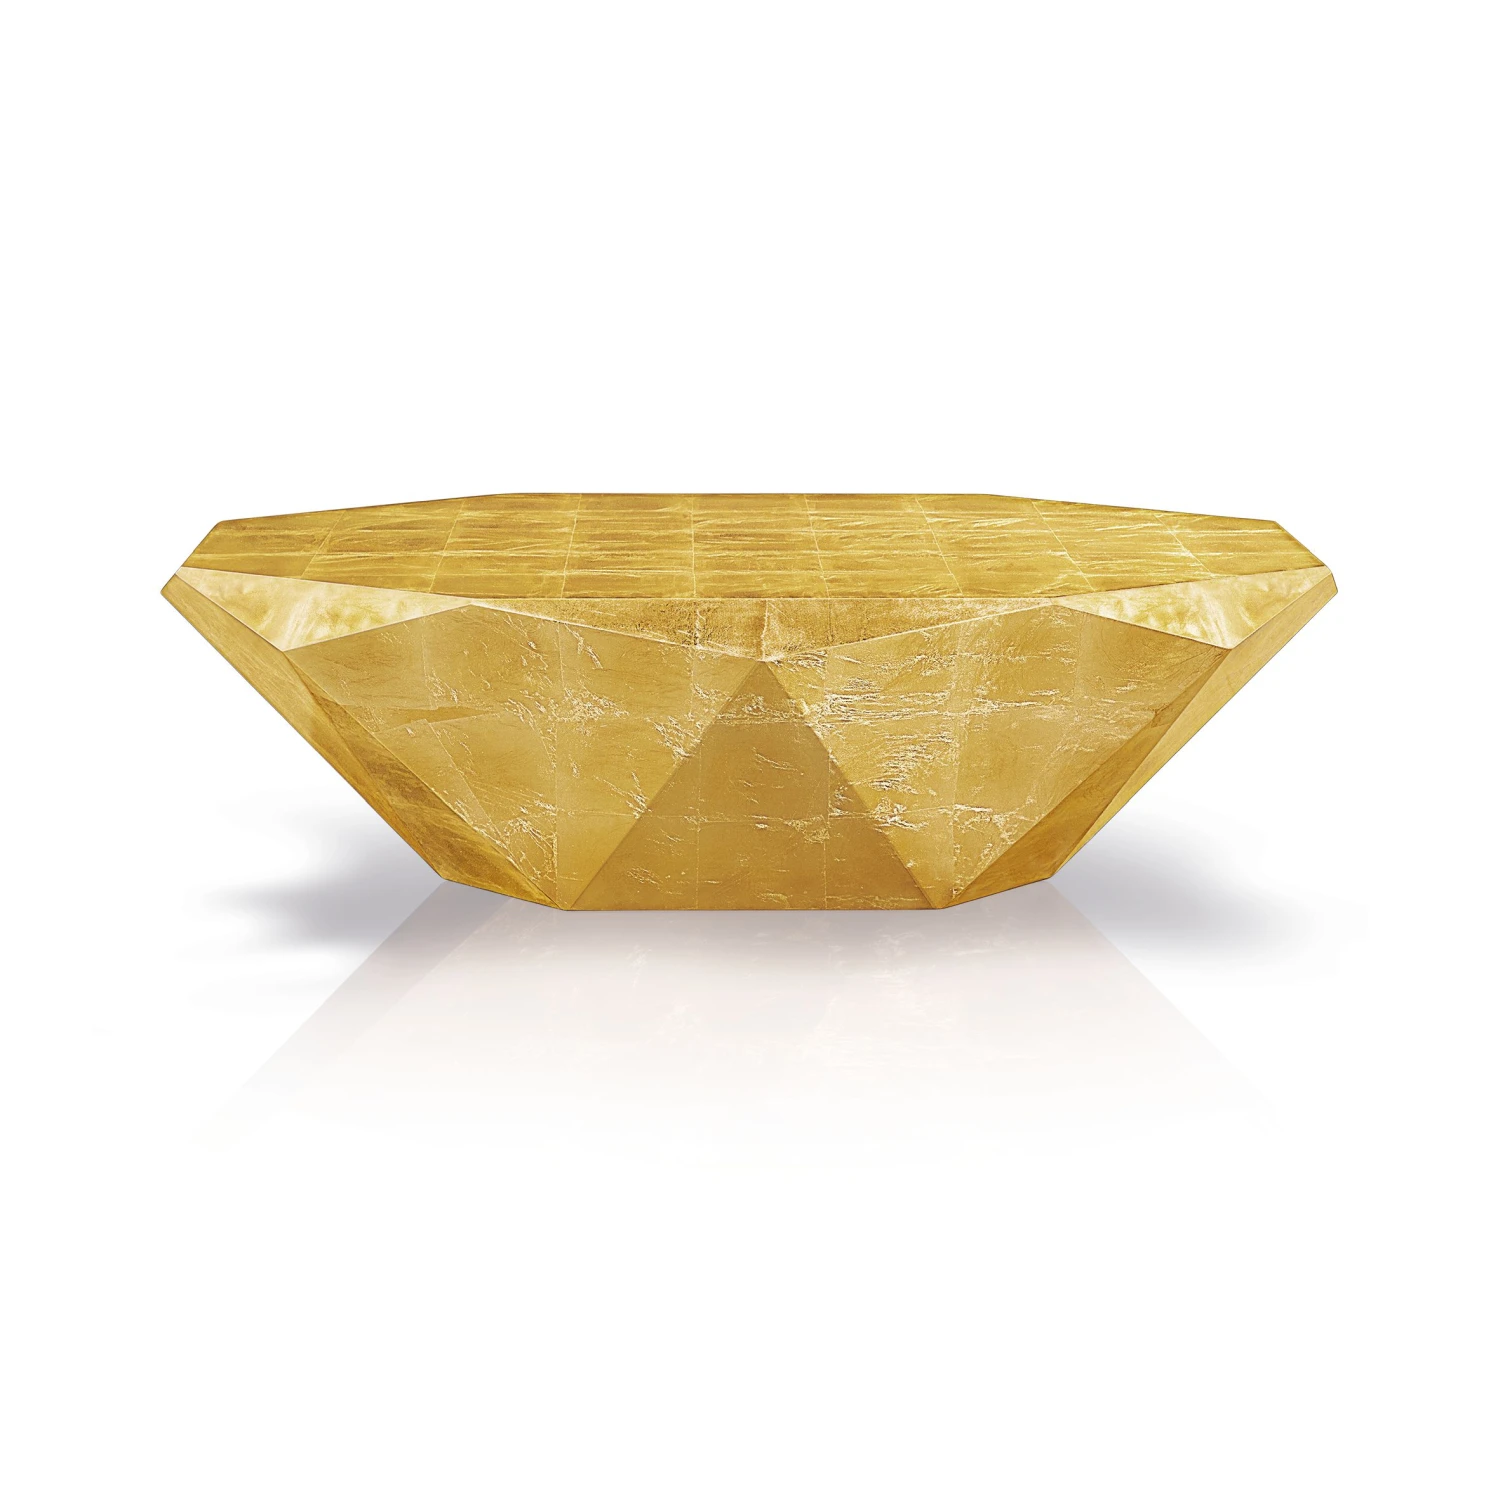 Bretz STEALTH Couchtisch oval J 145 in Messing-Blatt golden hochglanzlackiert, Breite 138 cm